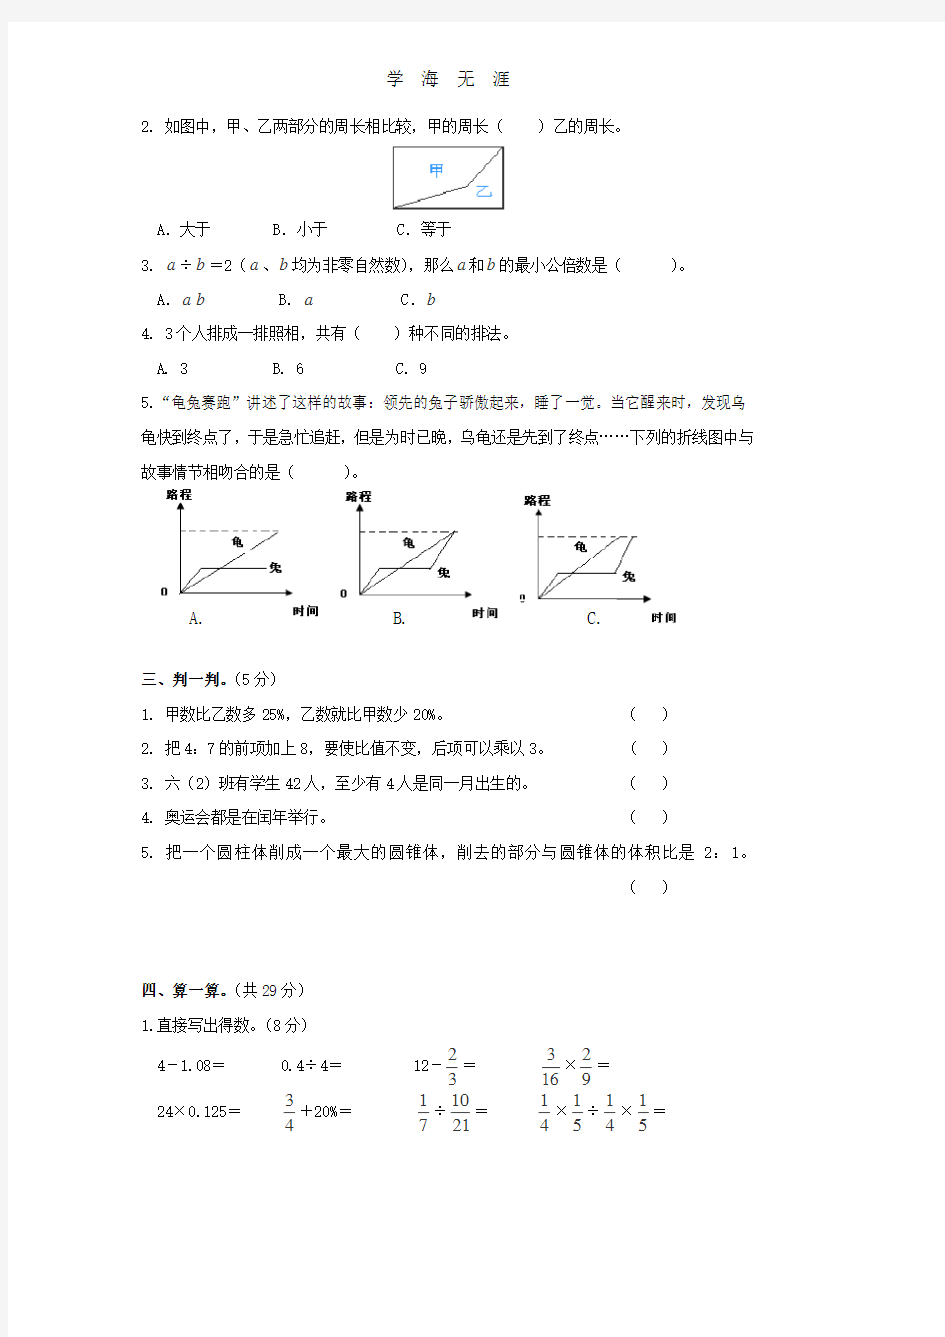 2015年小升初数学模拟试卷附答案.pdf